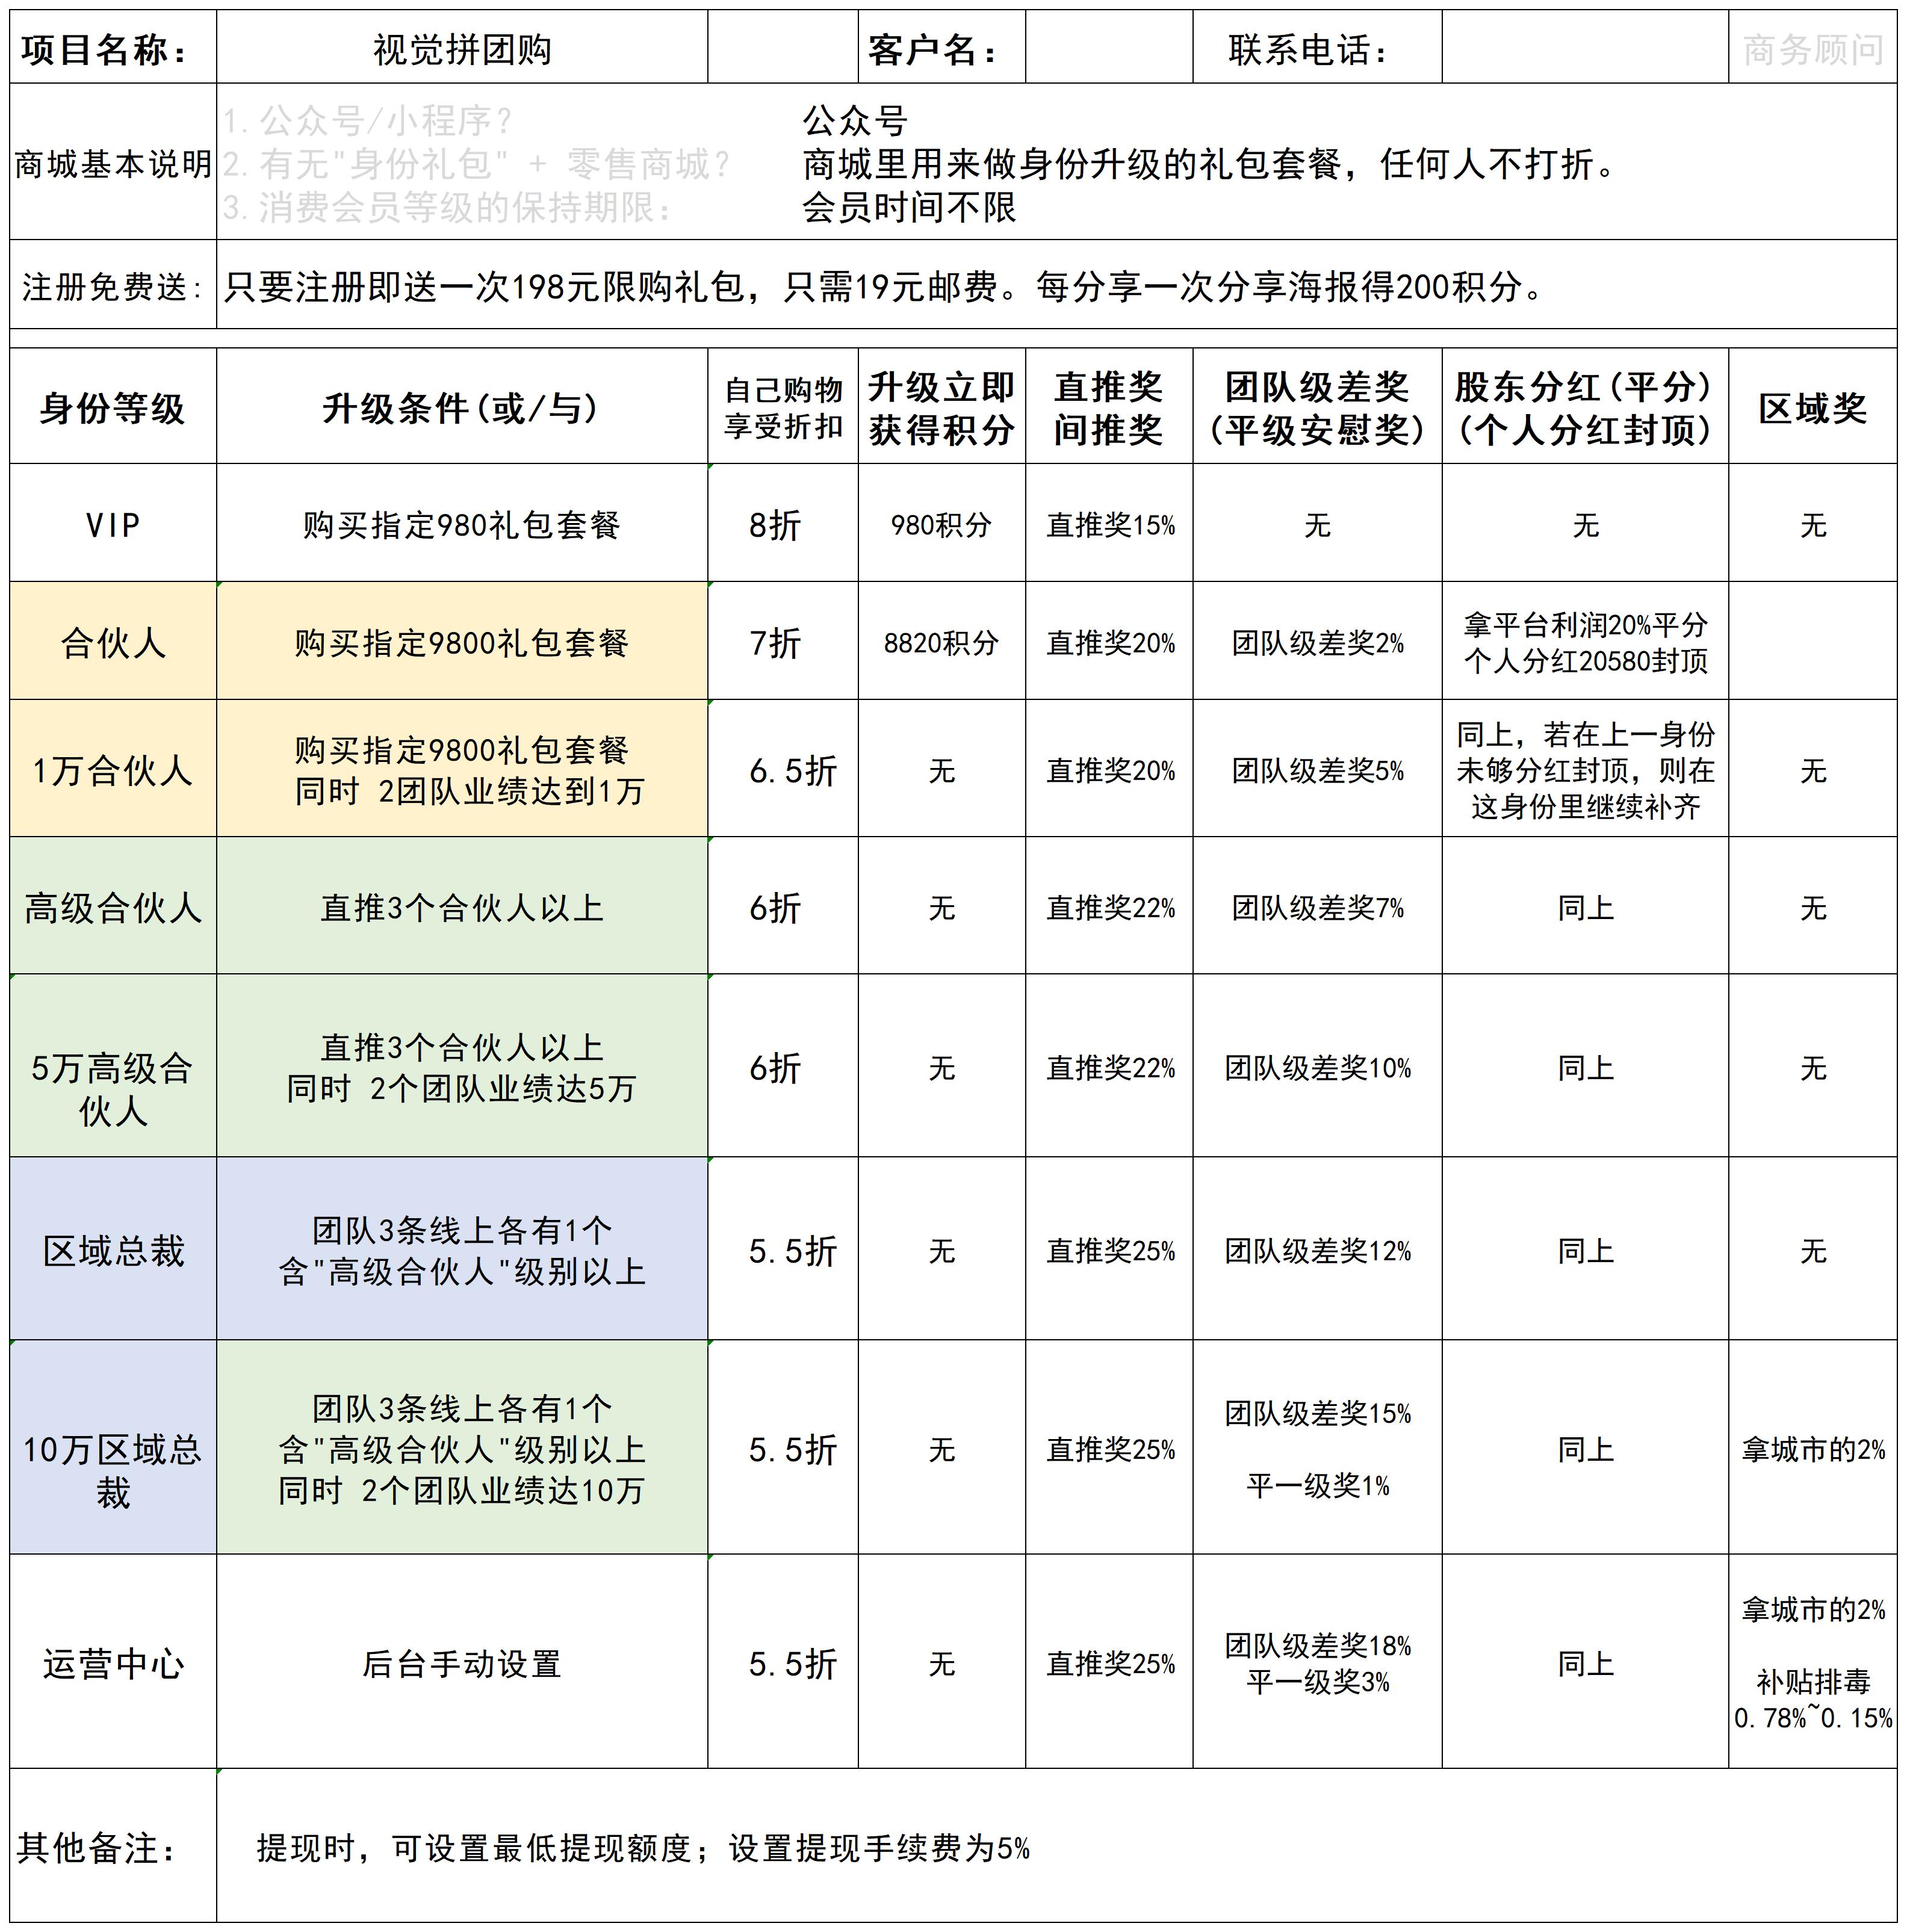 上海黄总--微商宝奖金制度统计表-简_A1H15(1).jpg